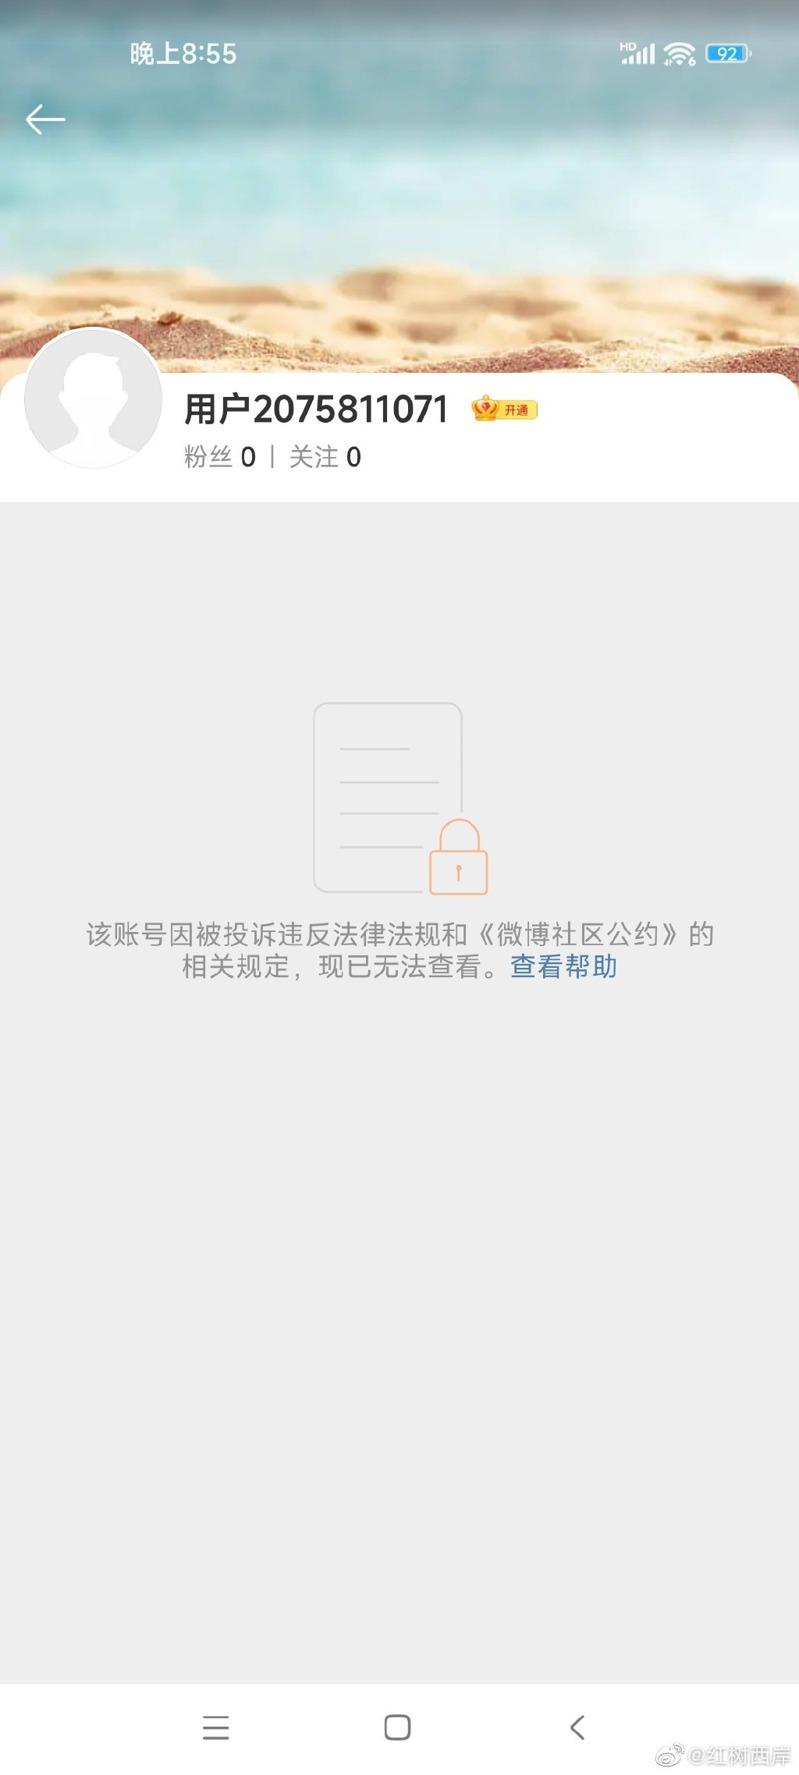 洪灏的微博账号已被下架。（取材自微博）